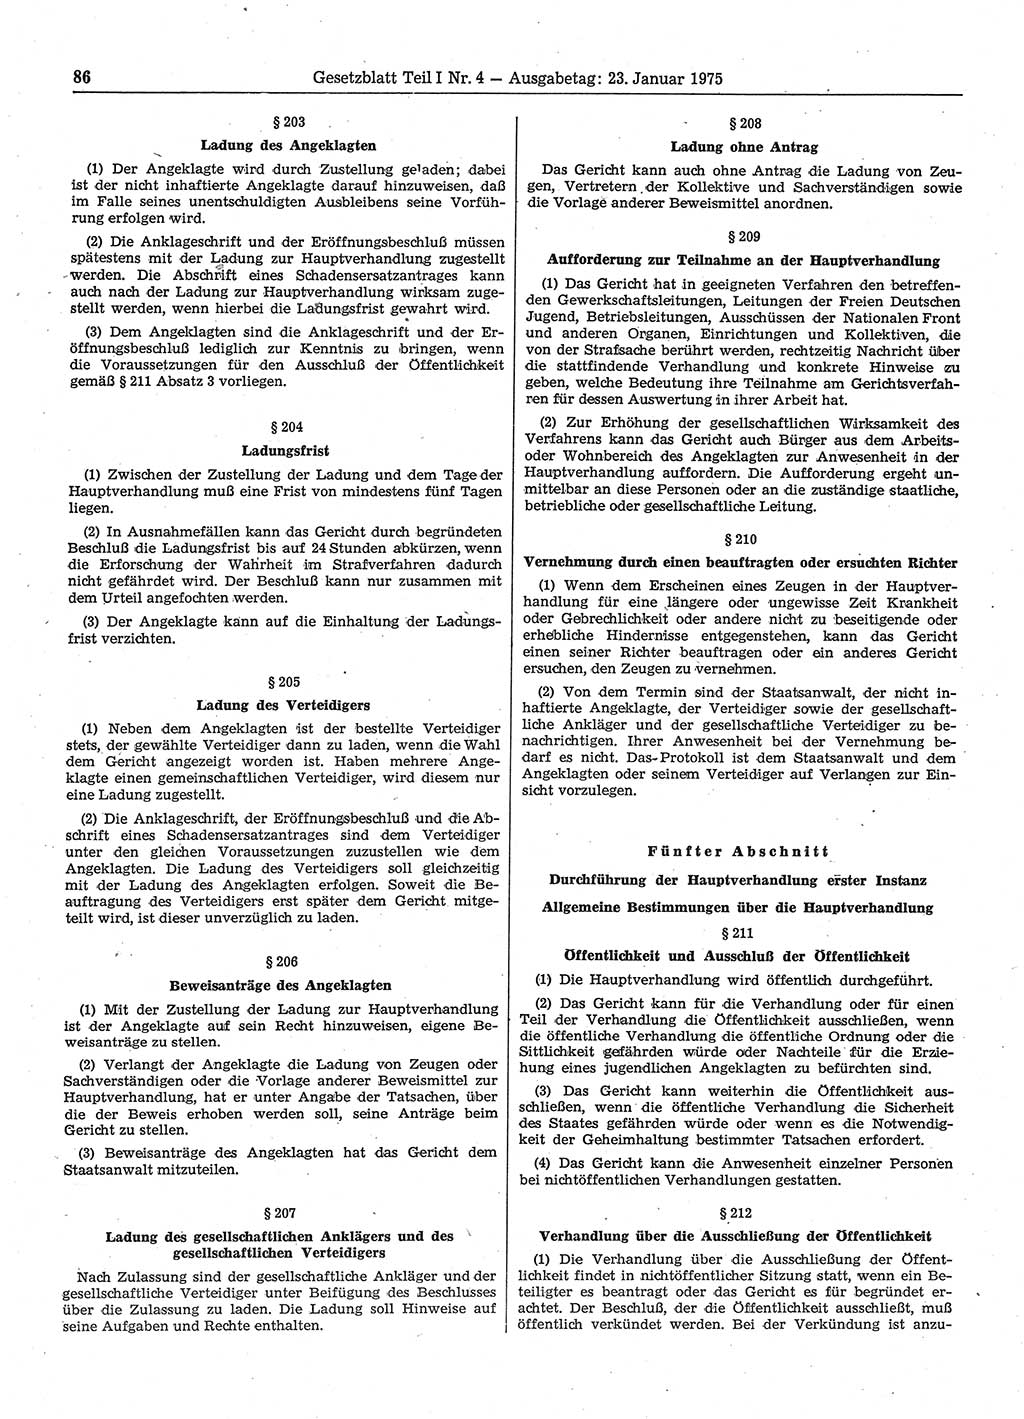 Gesetzblatt (GBl.) der Deutschen Demokratischen Republik (DDR) Teil Ⅰ 1975, Seite 86 (GBl. DDR Ⅰ 1975, S. 86)